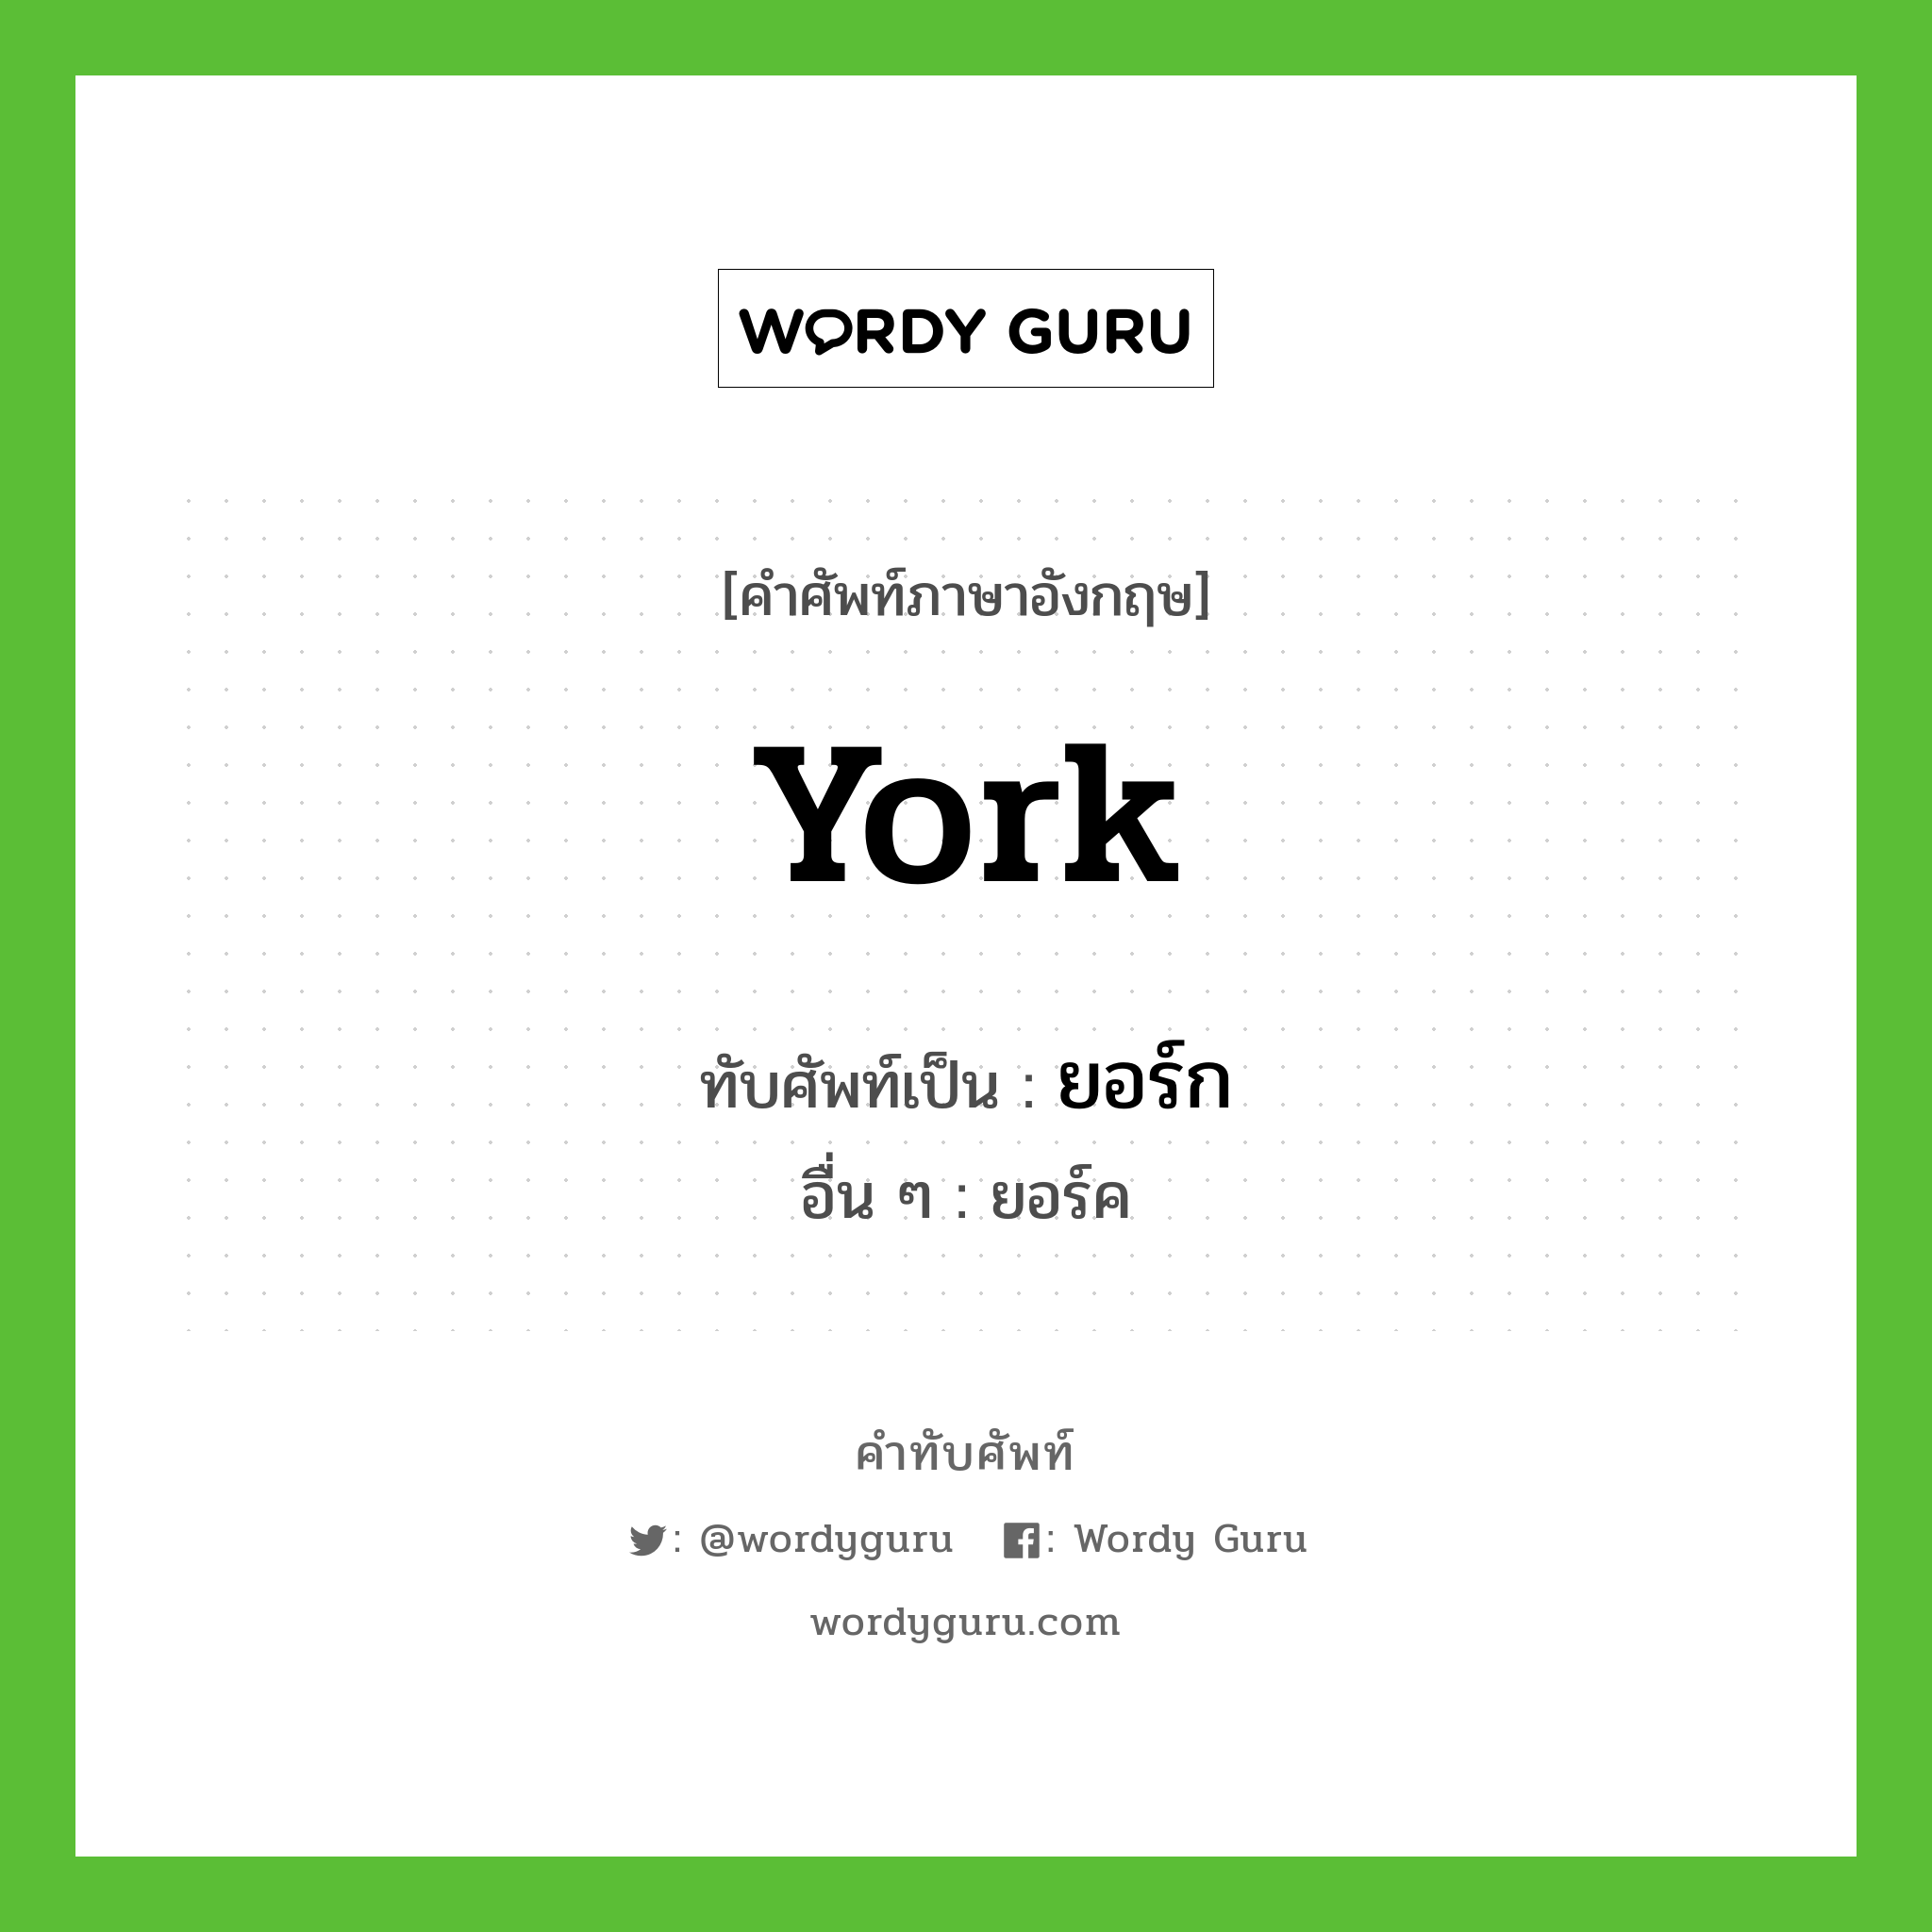 York เขียนเป็นคำไทยว่าอะไร?, คำศัพท์ภาษาอังกฤษ York ทับศัพท์เป็น ยอร์ก อื่น ๆ ยอร์ค